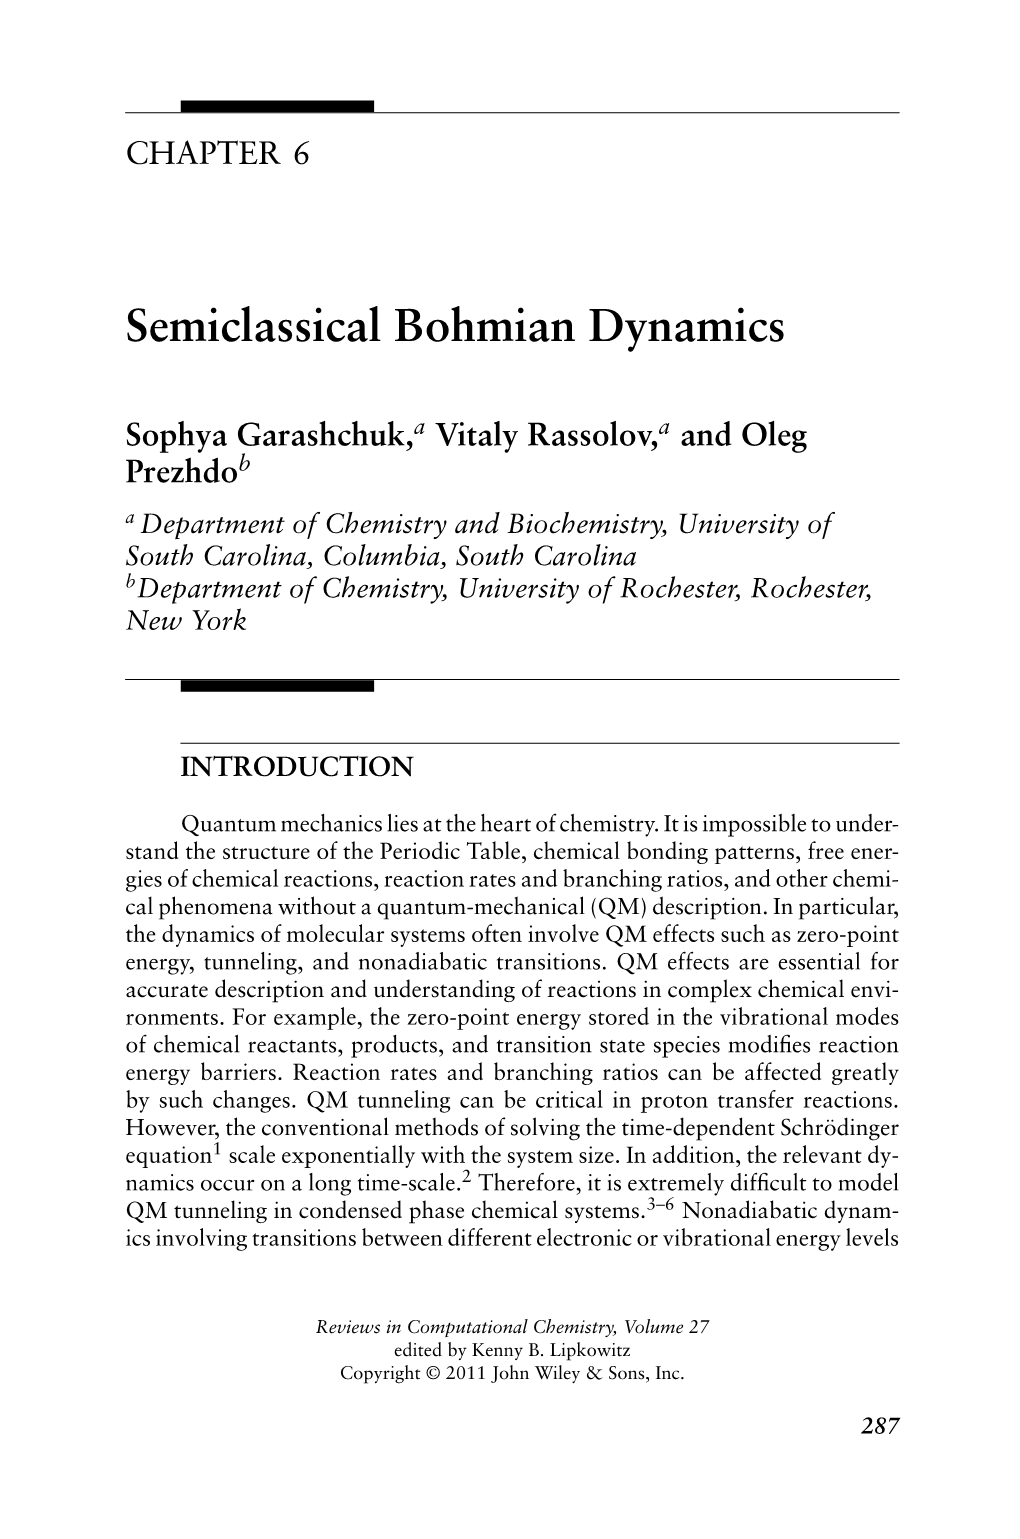 Semiclassical Bohmian Dynamics